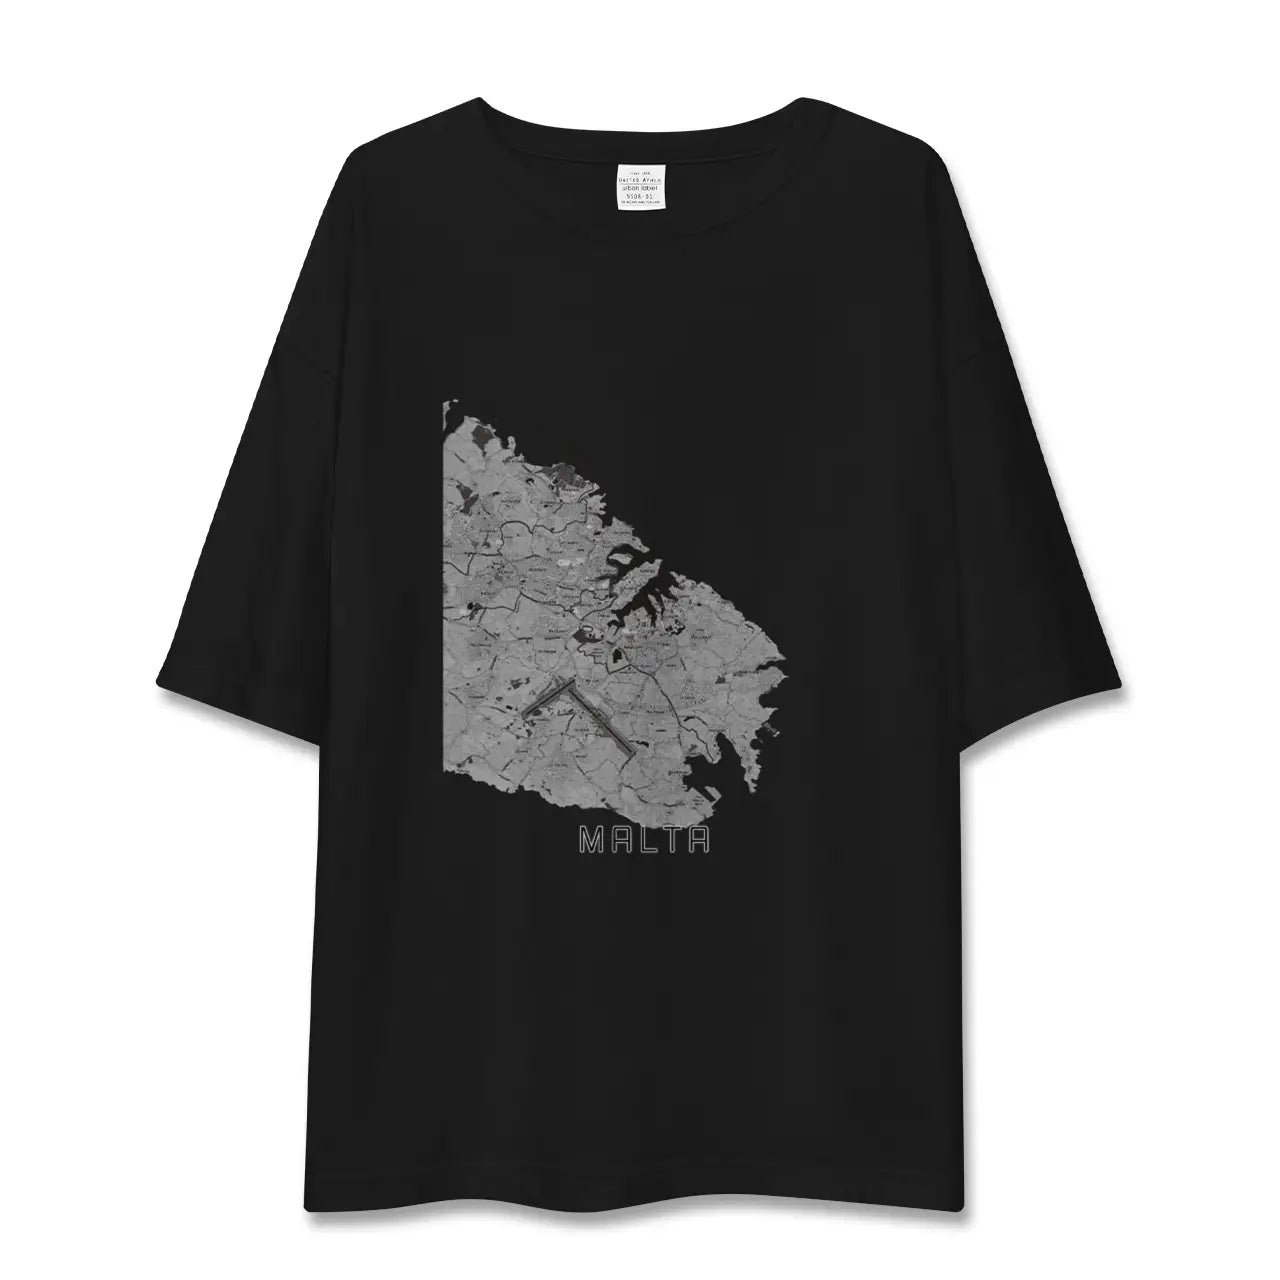 【マルタ】地図柄ビッグシルエットTシャツ